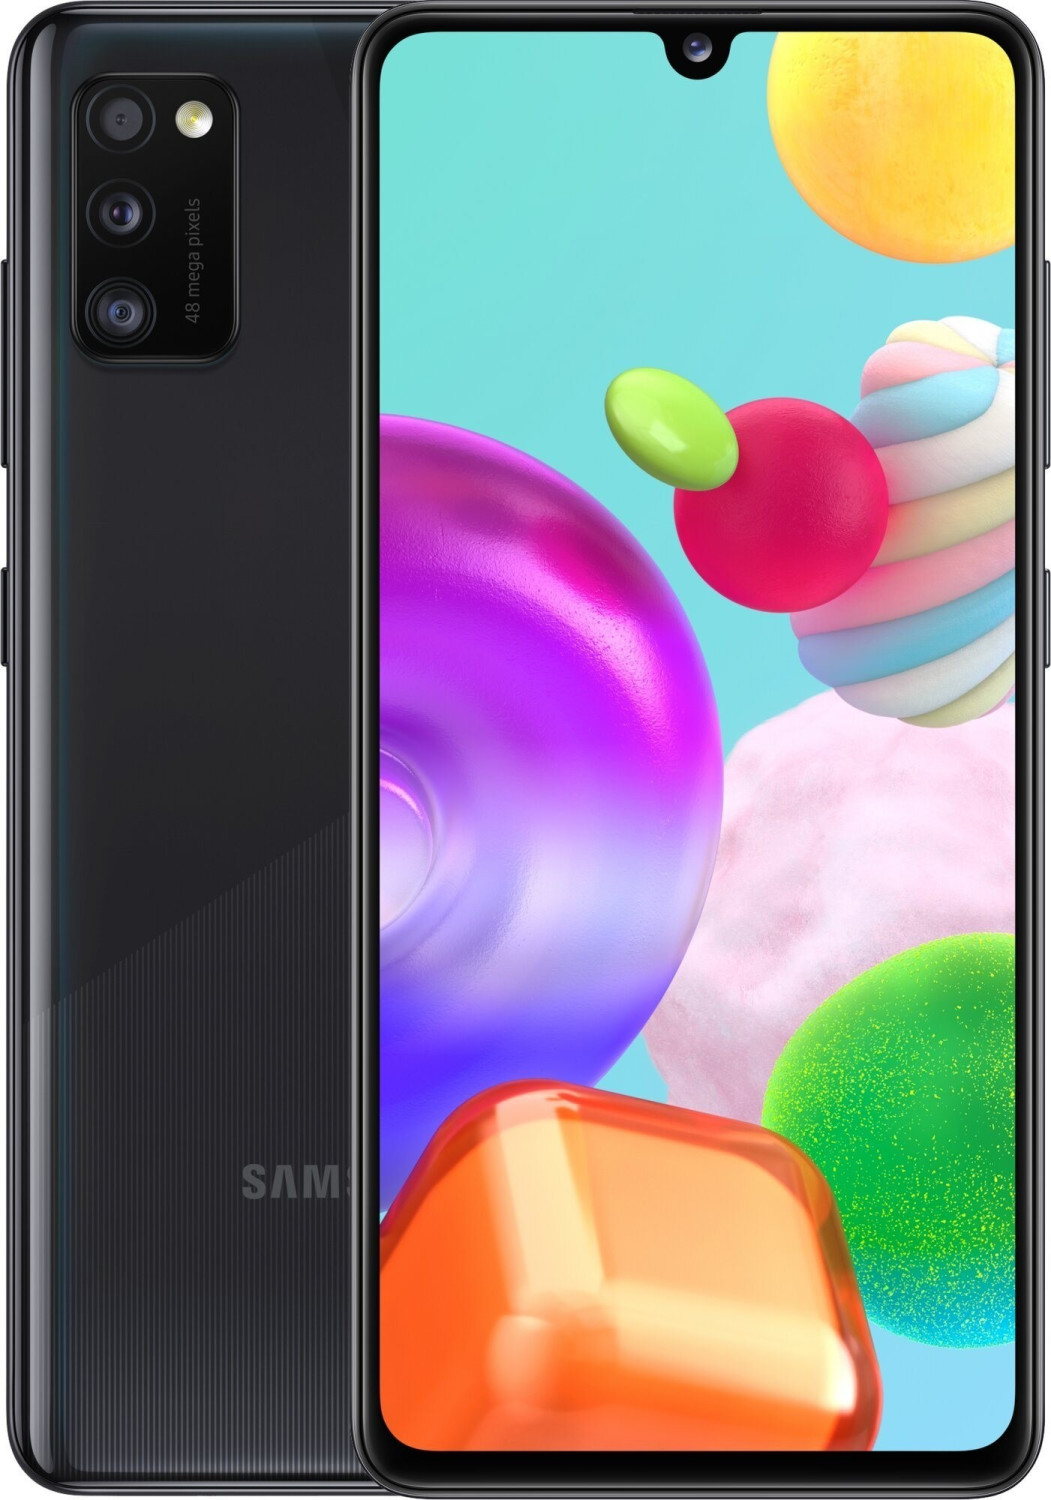 Samsung Galaxy A41 Black